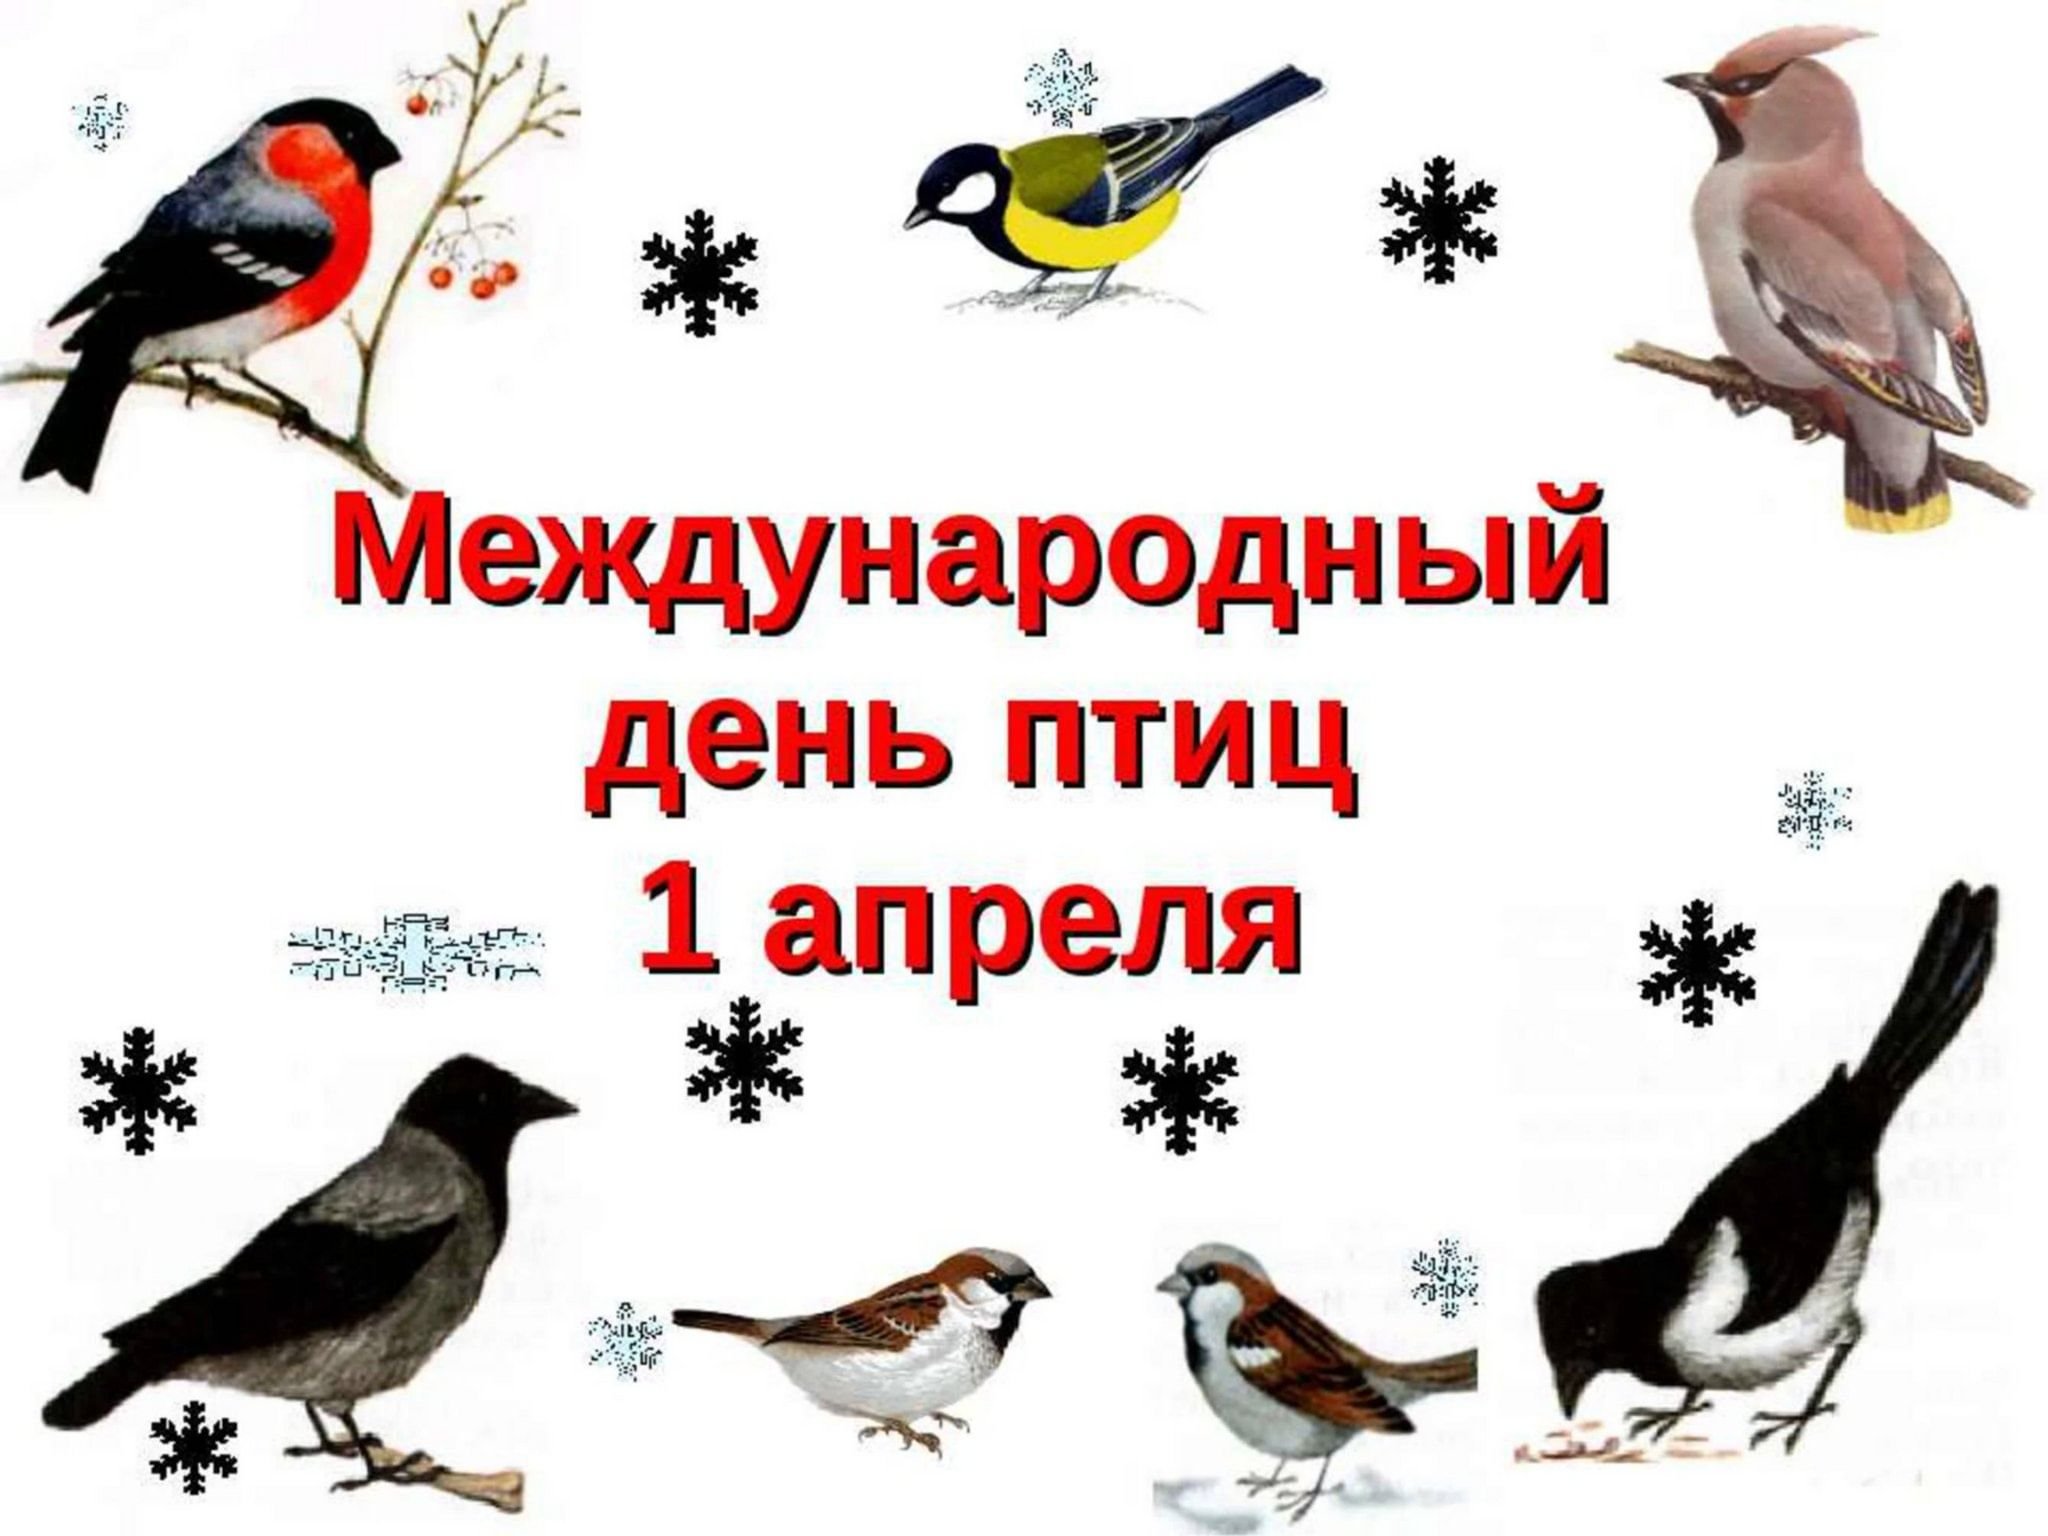 1 апреля всемирный день птиц. Международный день птиц. 1 Апреля Международный день птиц. Междунаровныйденьптиц. Денптицу.